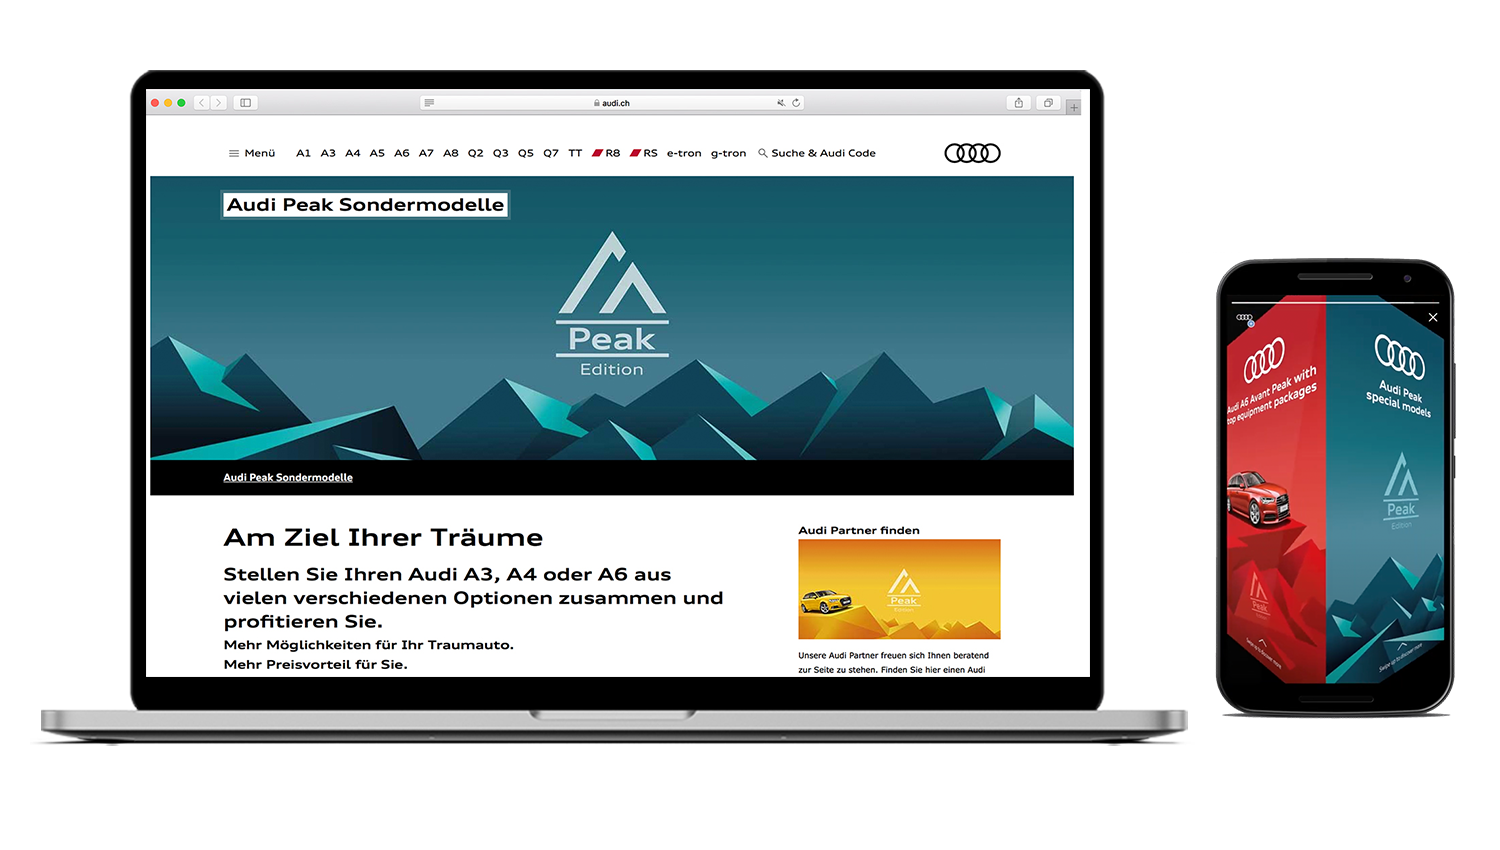 Audi Peak Edition Kampagne Sondermodelle Website, Banner